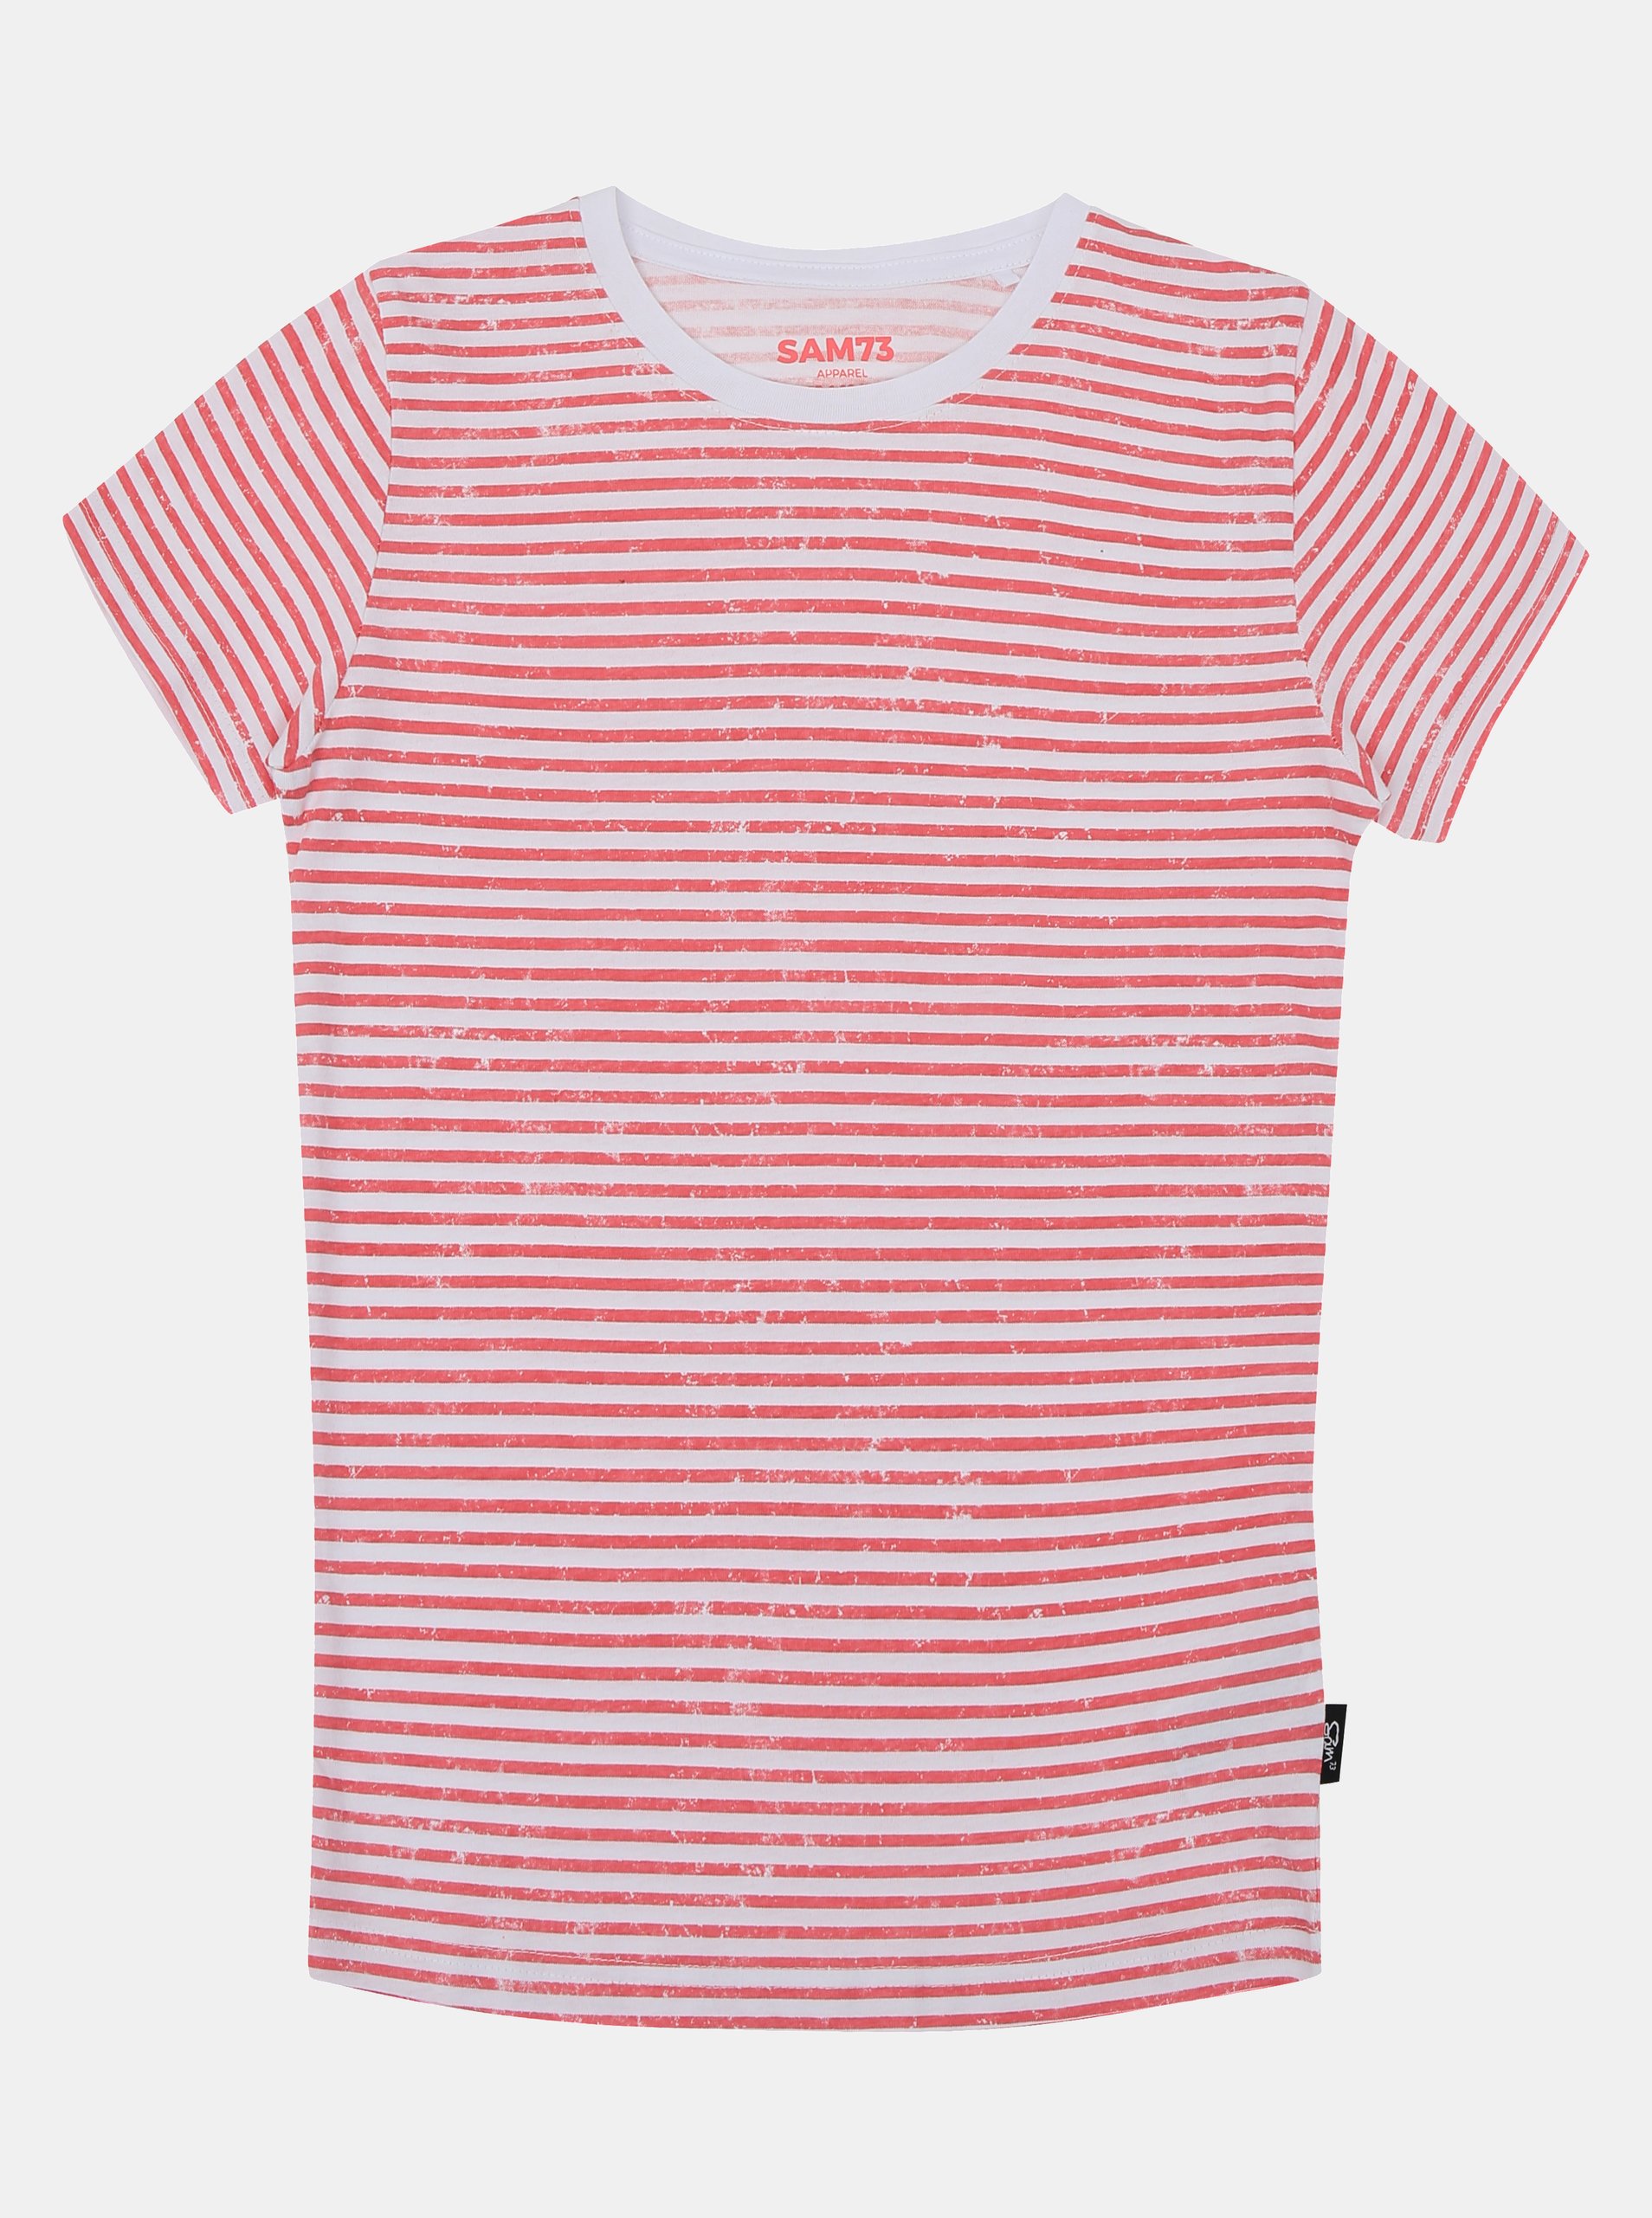 Lacno Ružovo-biele dievčenské pruhované tričko SAM 73